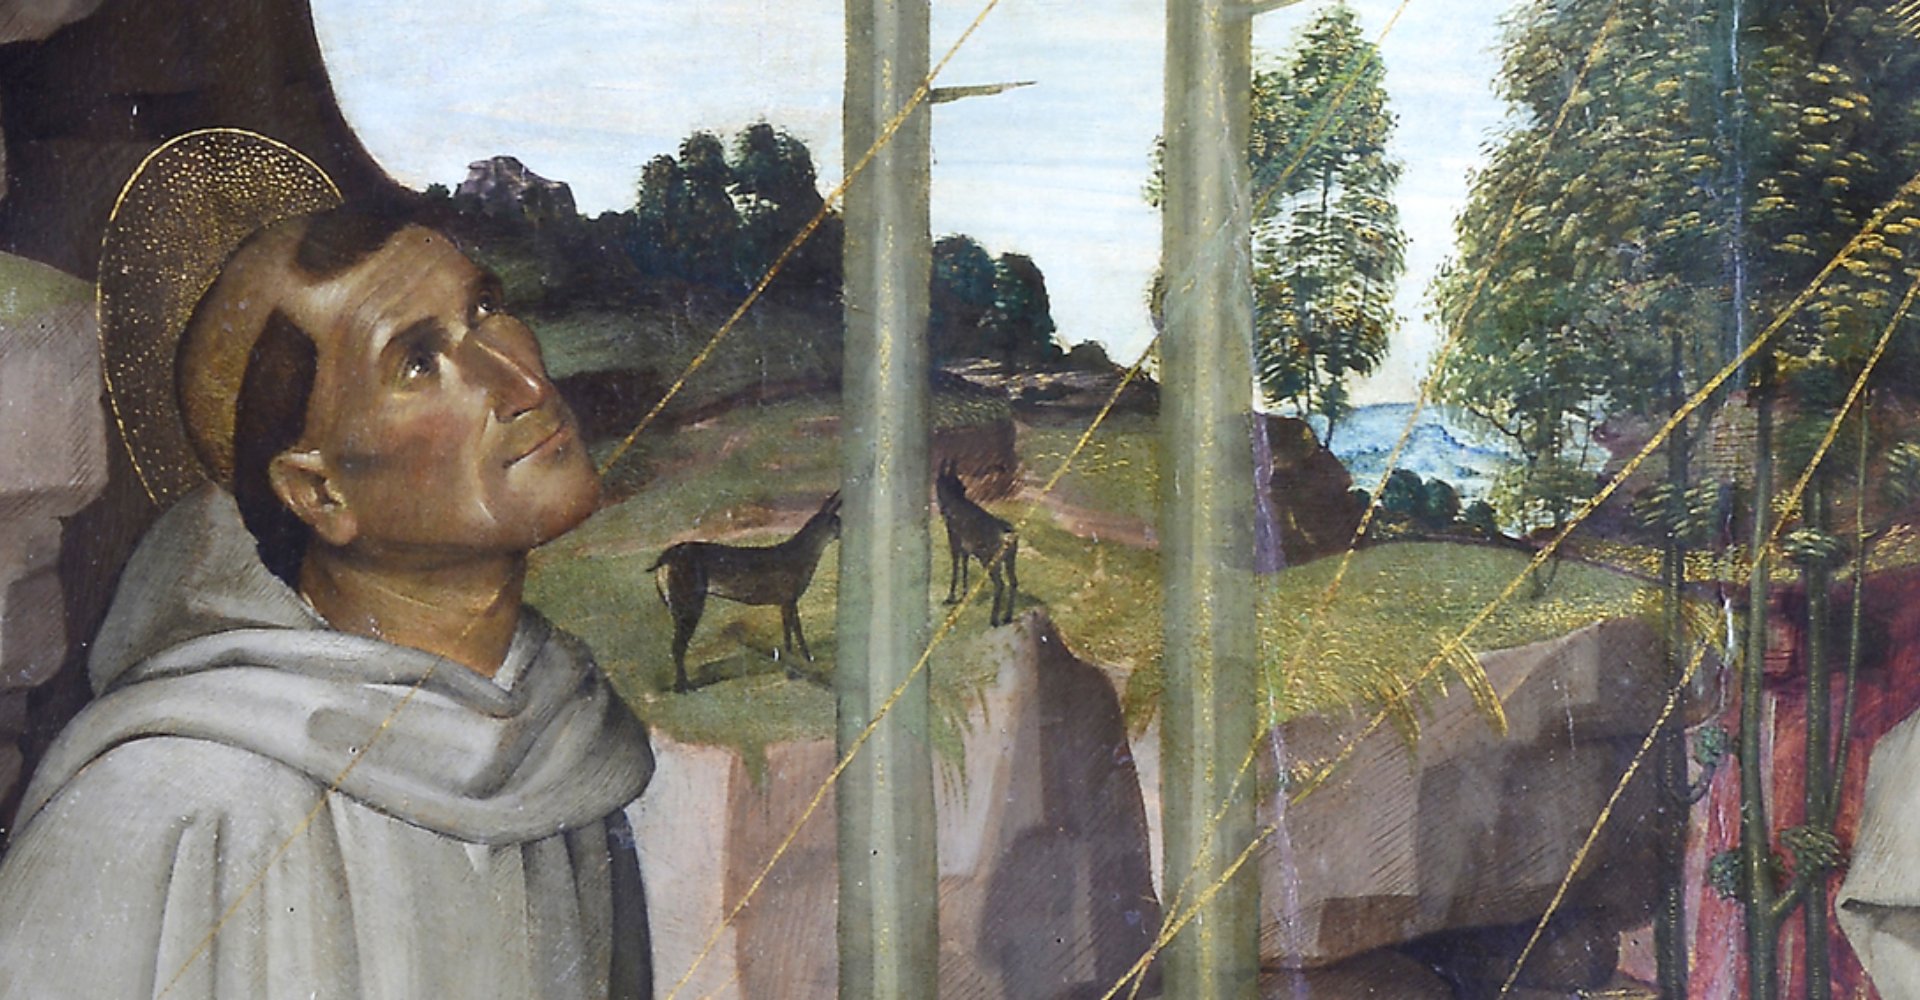 Saint Francis receives the stigmata - detail